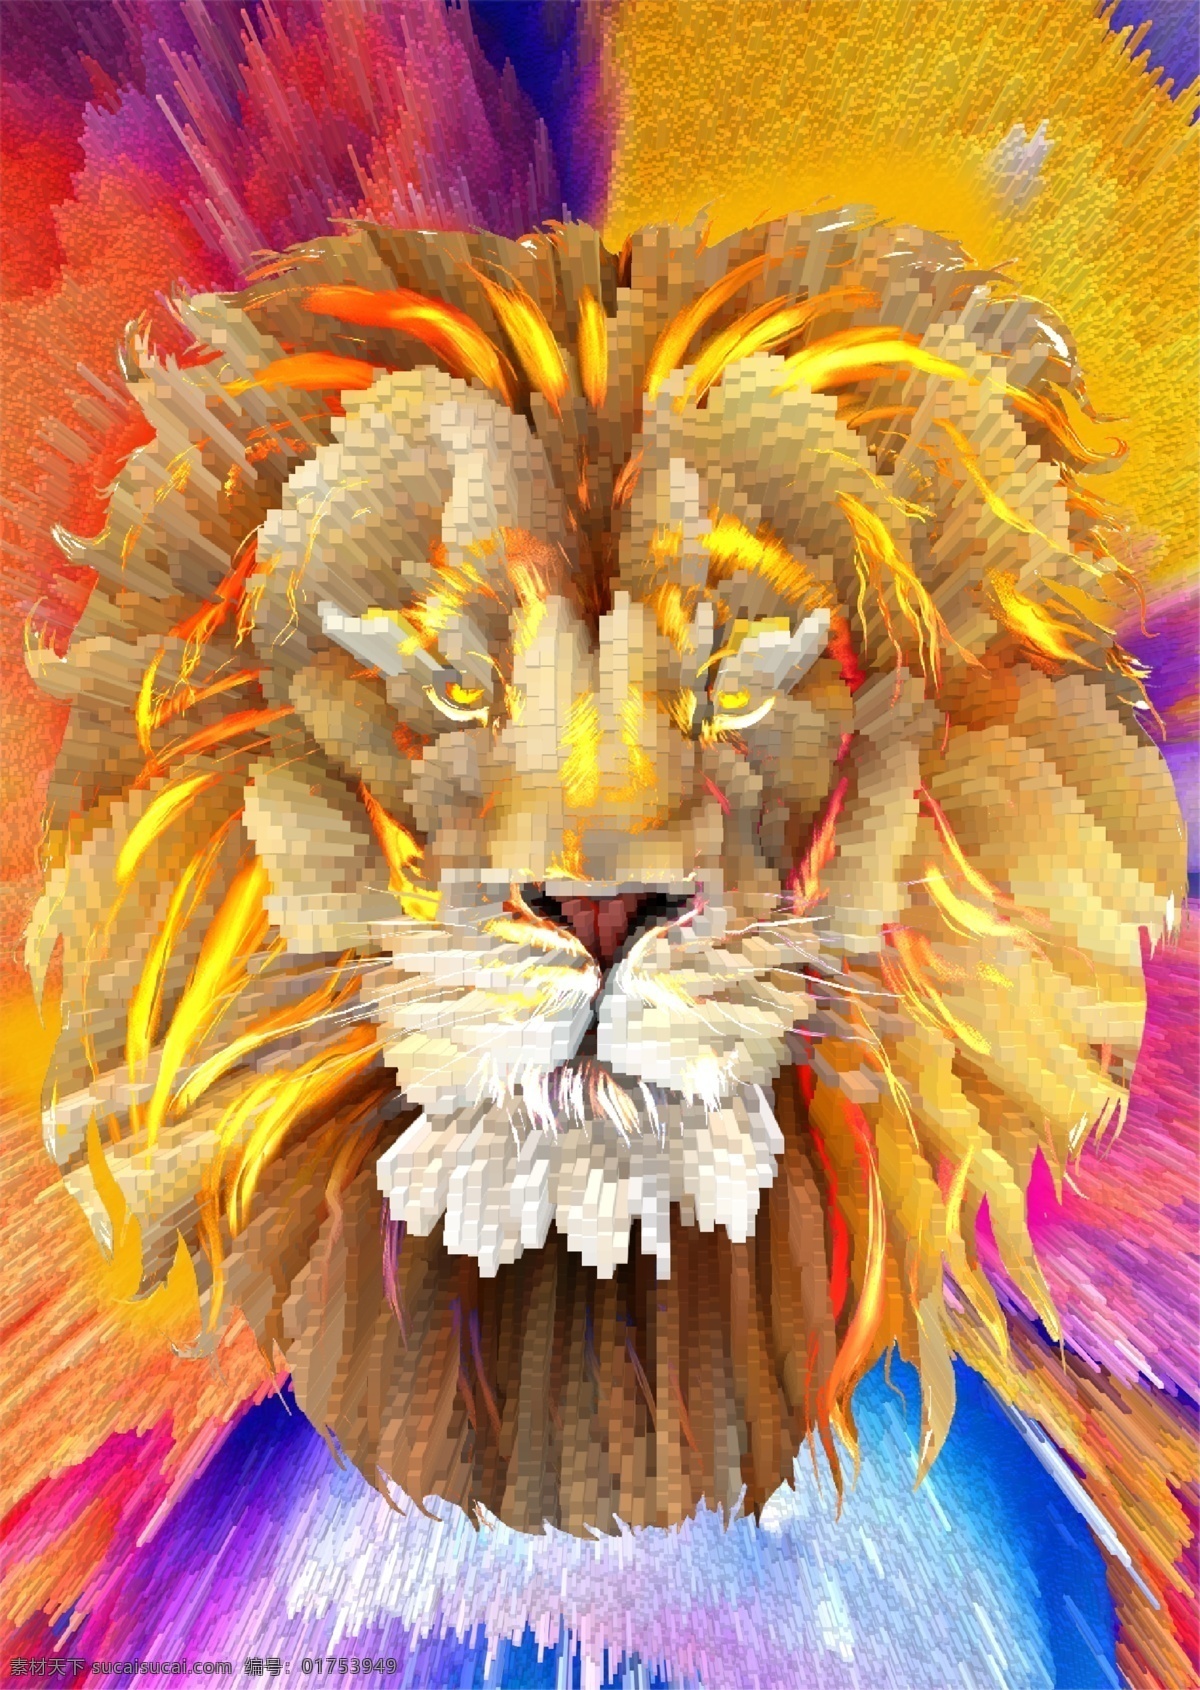 狮子 3d 插画 狮子插画 爆炸风格 狮子头画 3d突出画 手绘 分层 背景素材